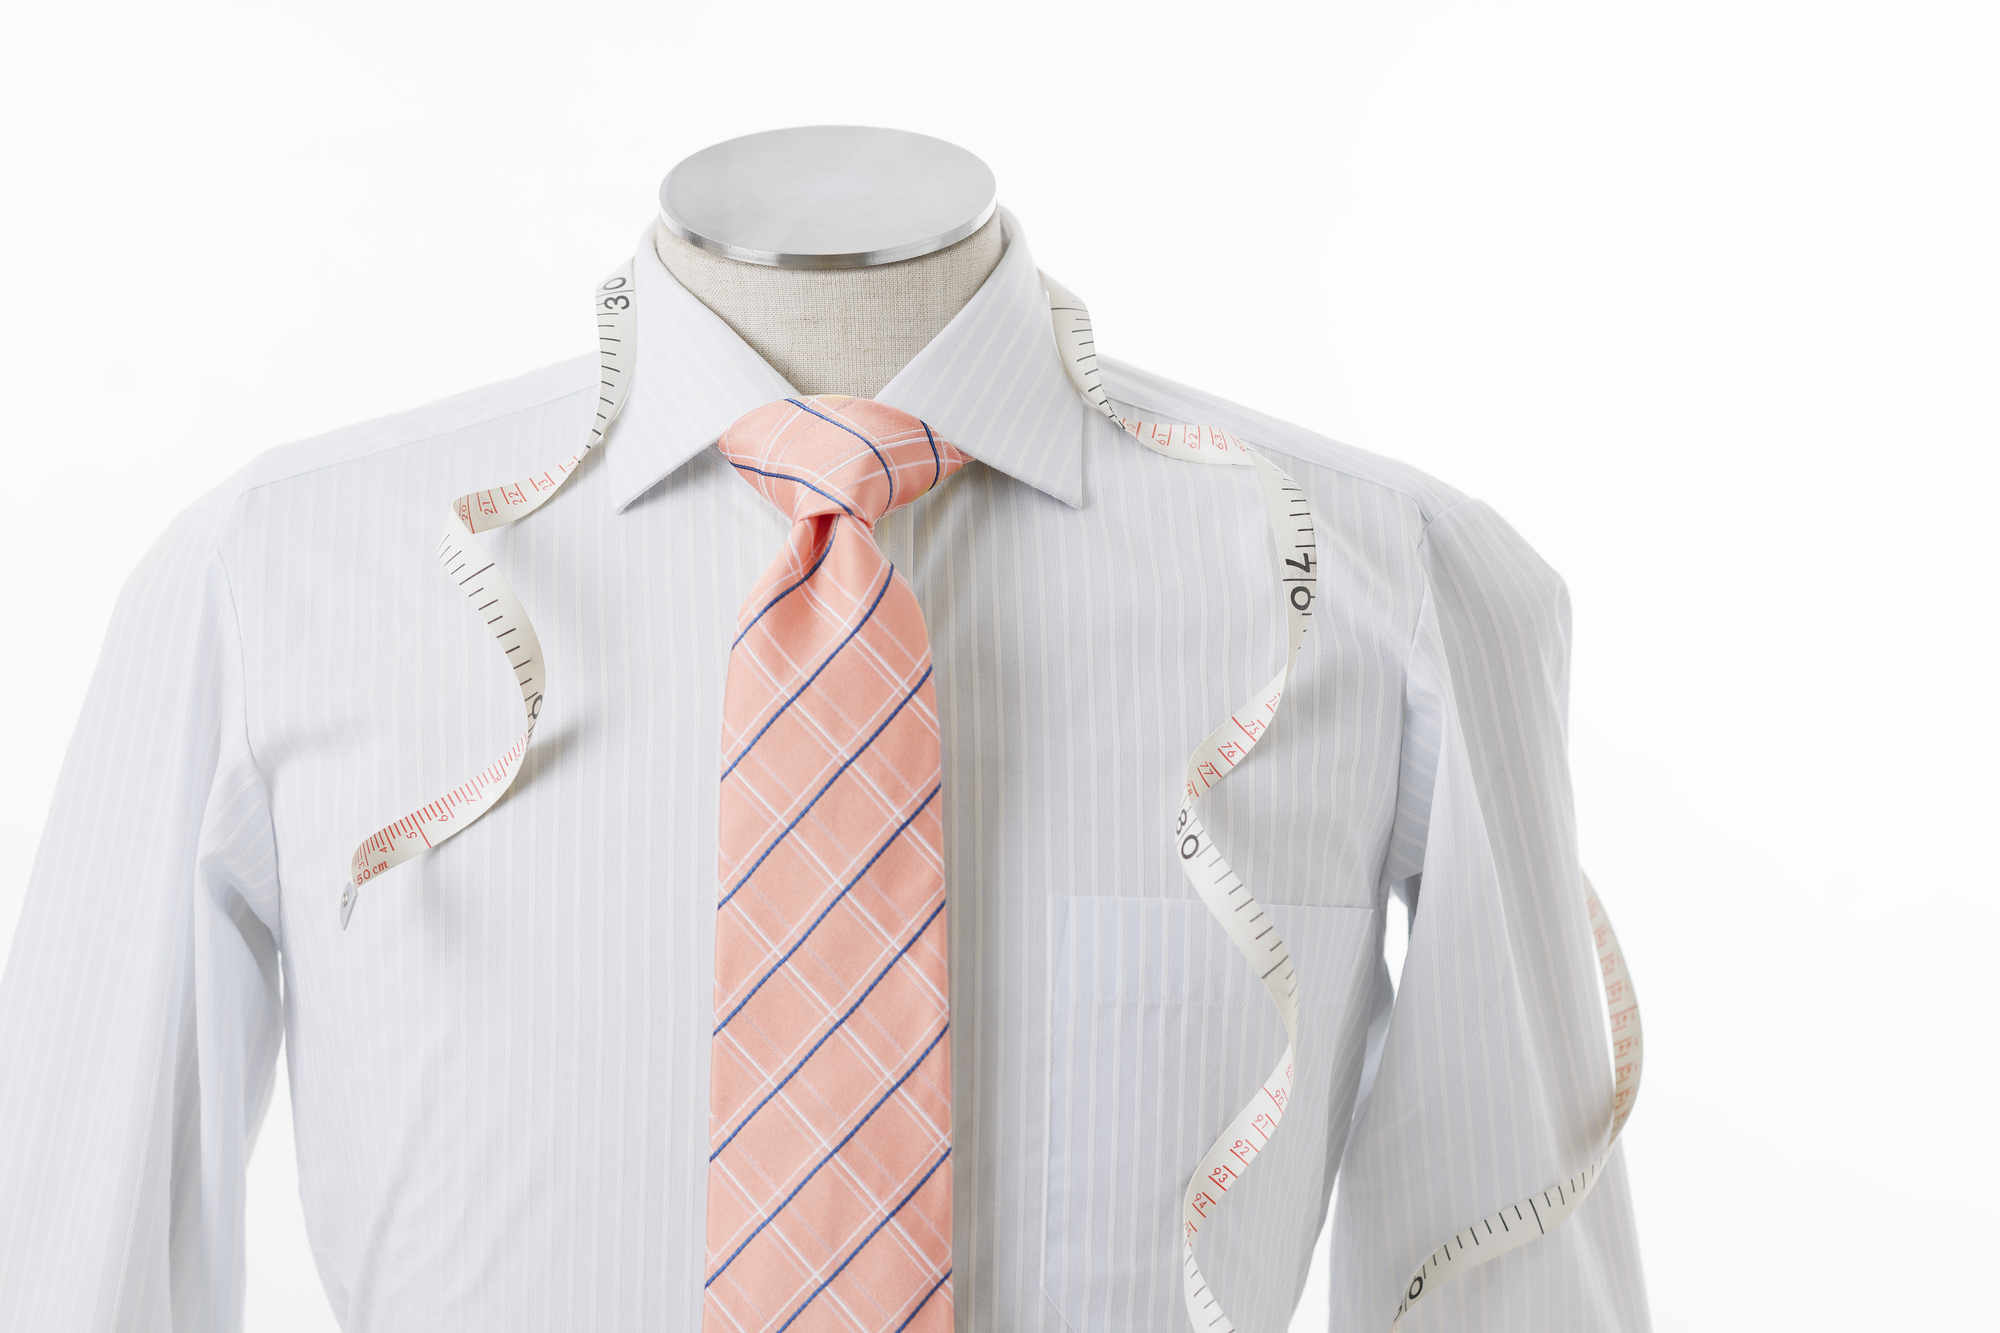 ストライプの白いシャツに細いネイビーと白のチェック柄のサーモンピンクのネクタイを着たマネキン